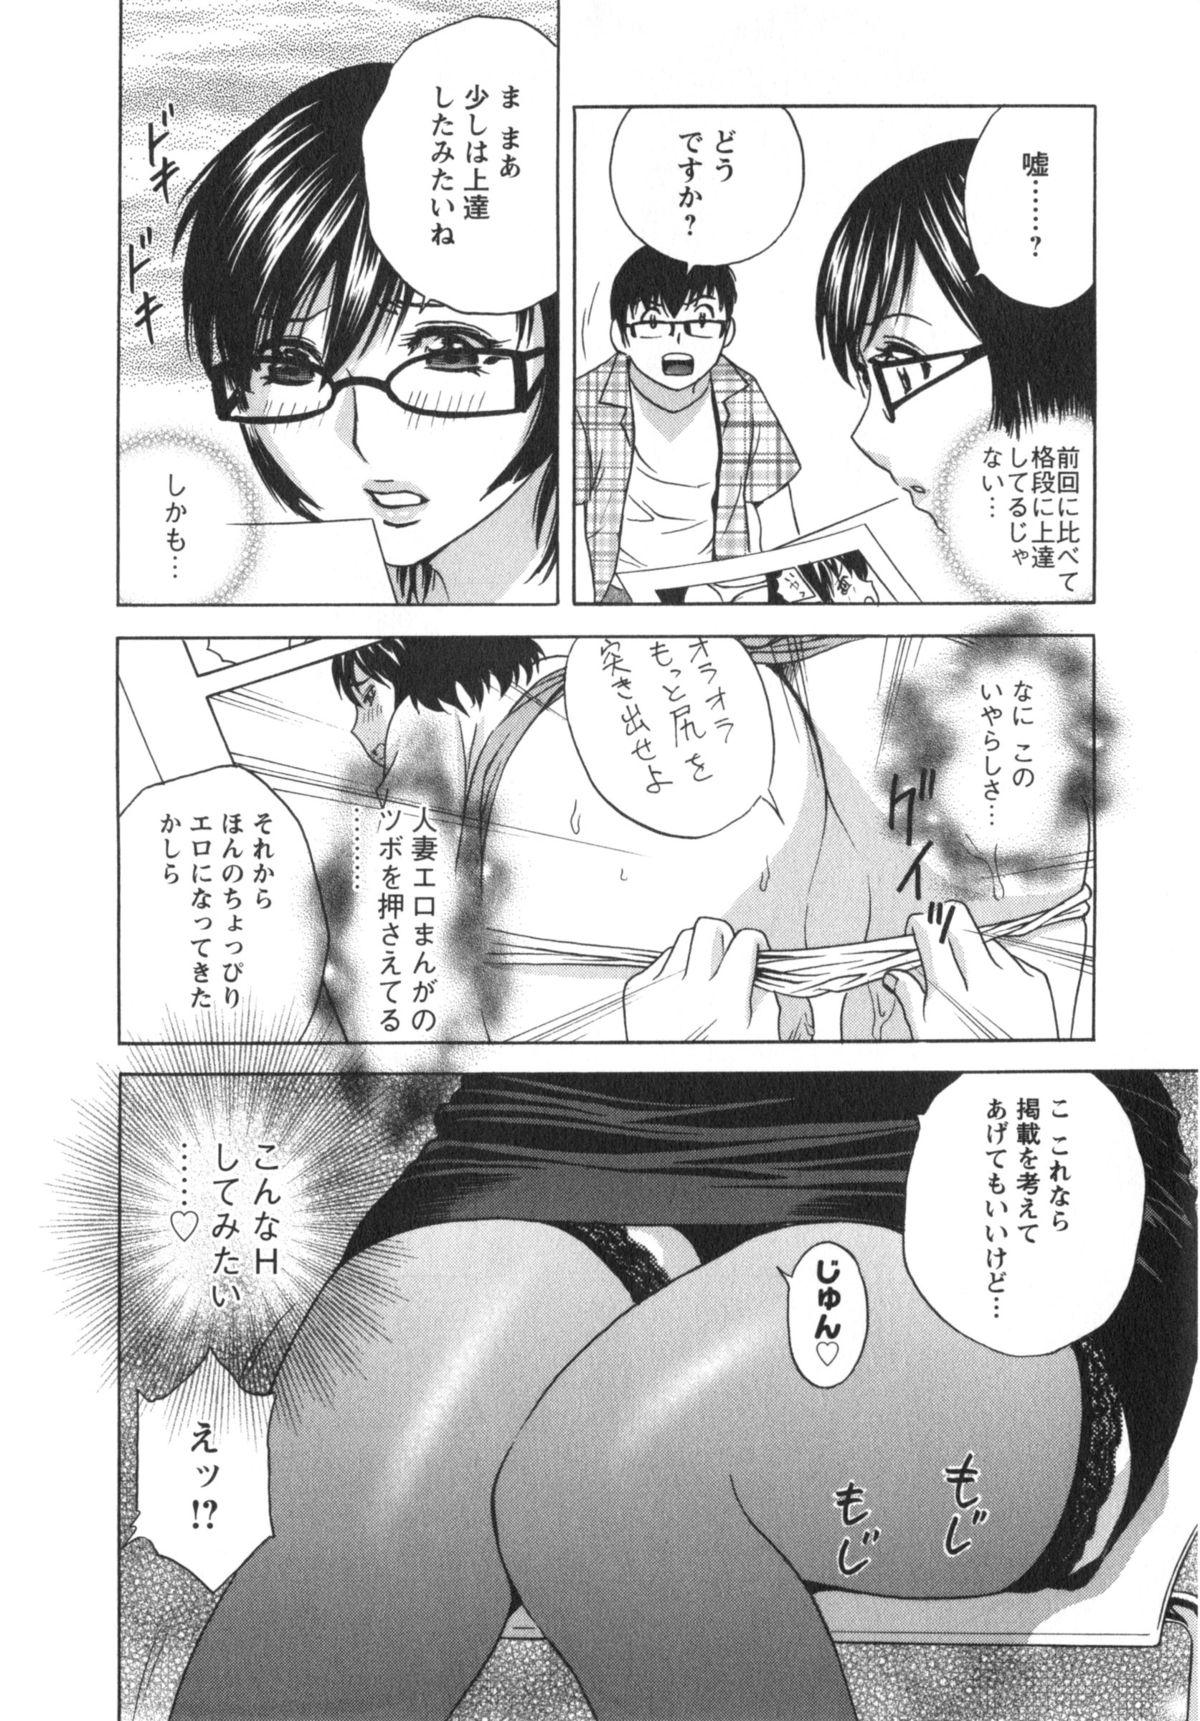 Manga no youna Hitozuma to no Hibi - Days with Married Women such as Comics. 104